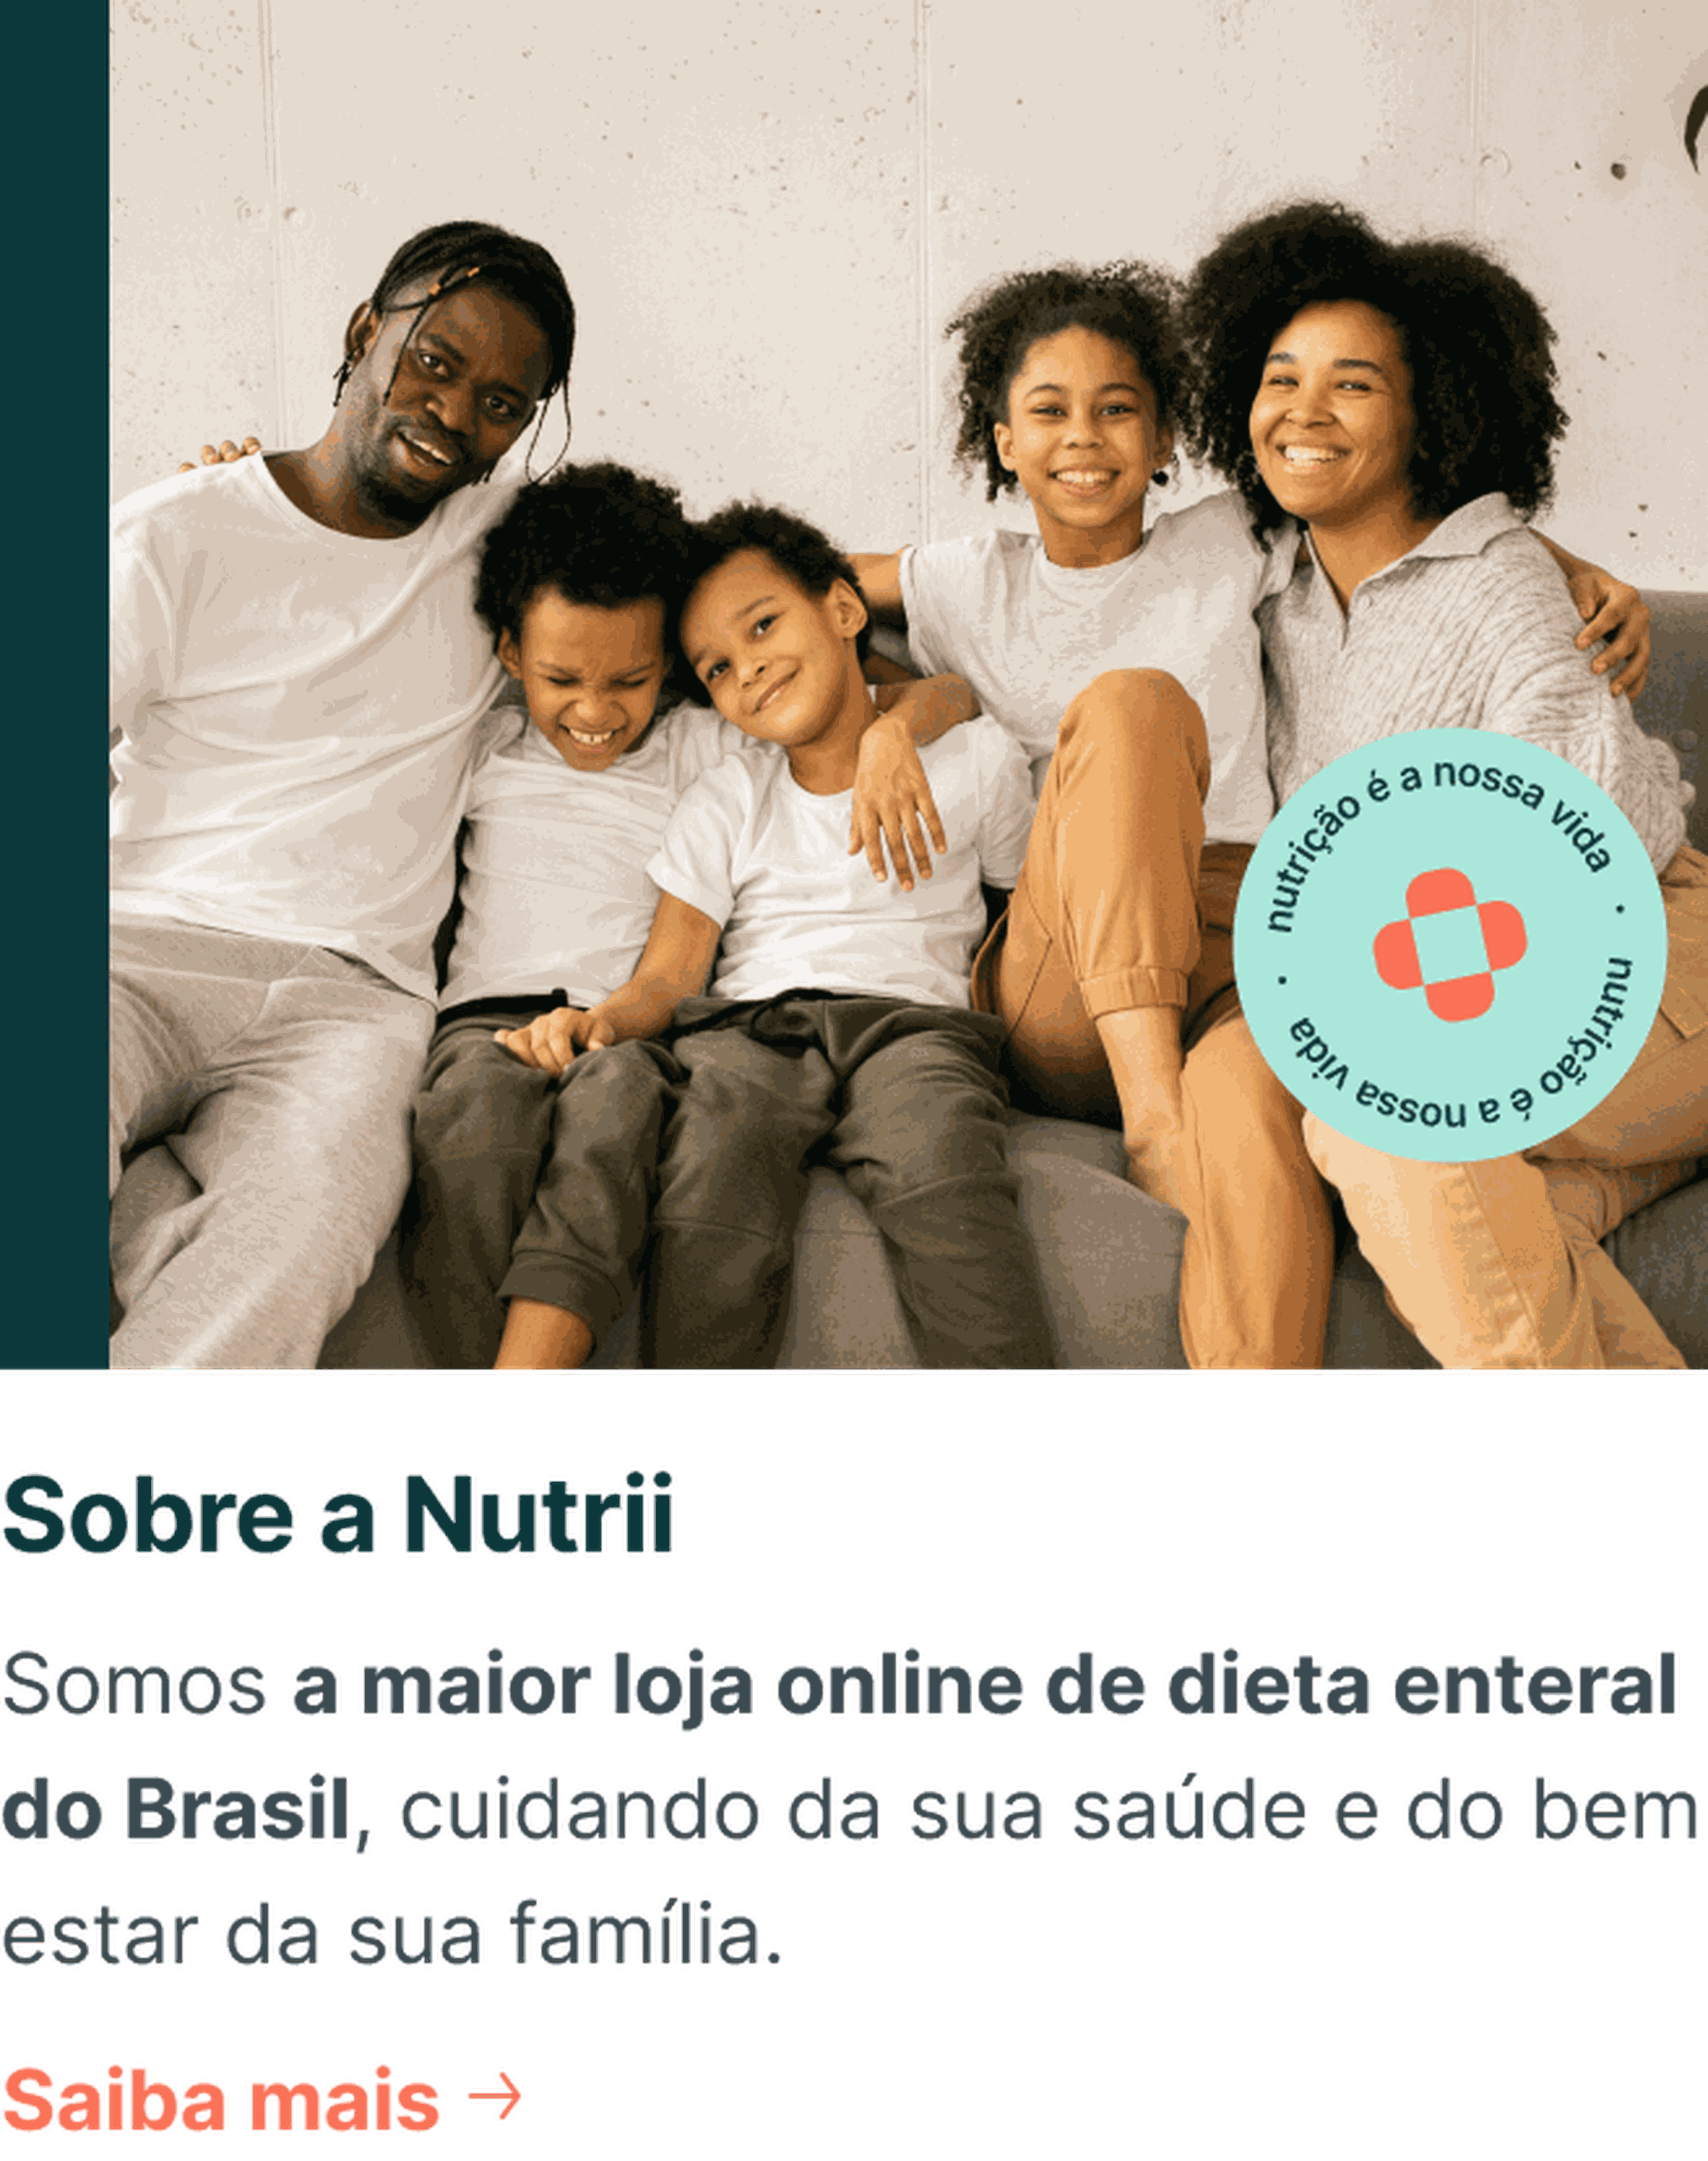 Somos a maior loja online de dieta enteral do Brasil, cuidando da sua saúde e do bem estar da sua família.